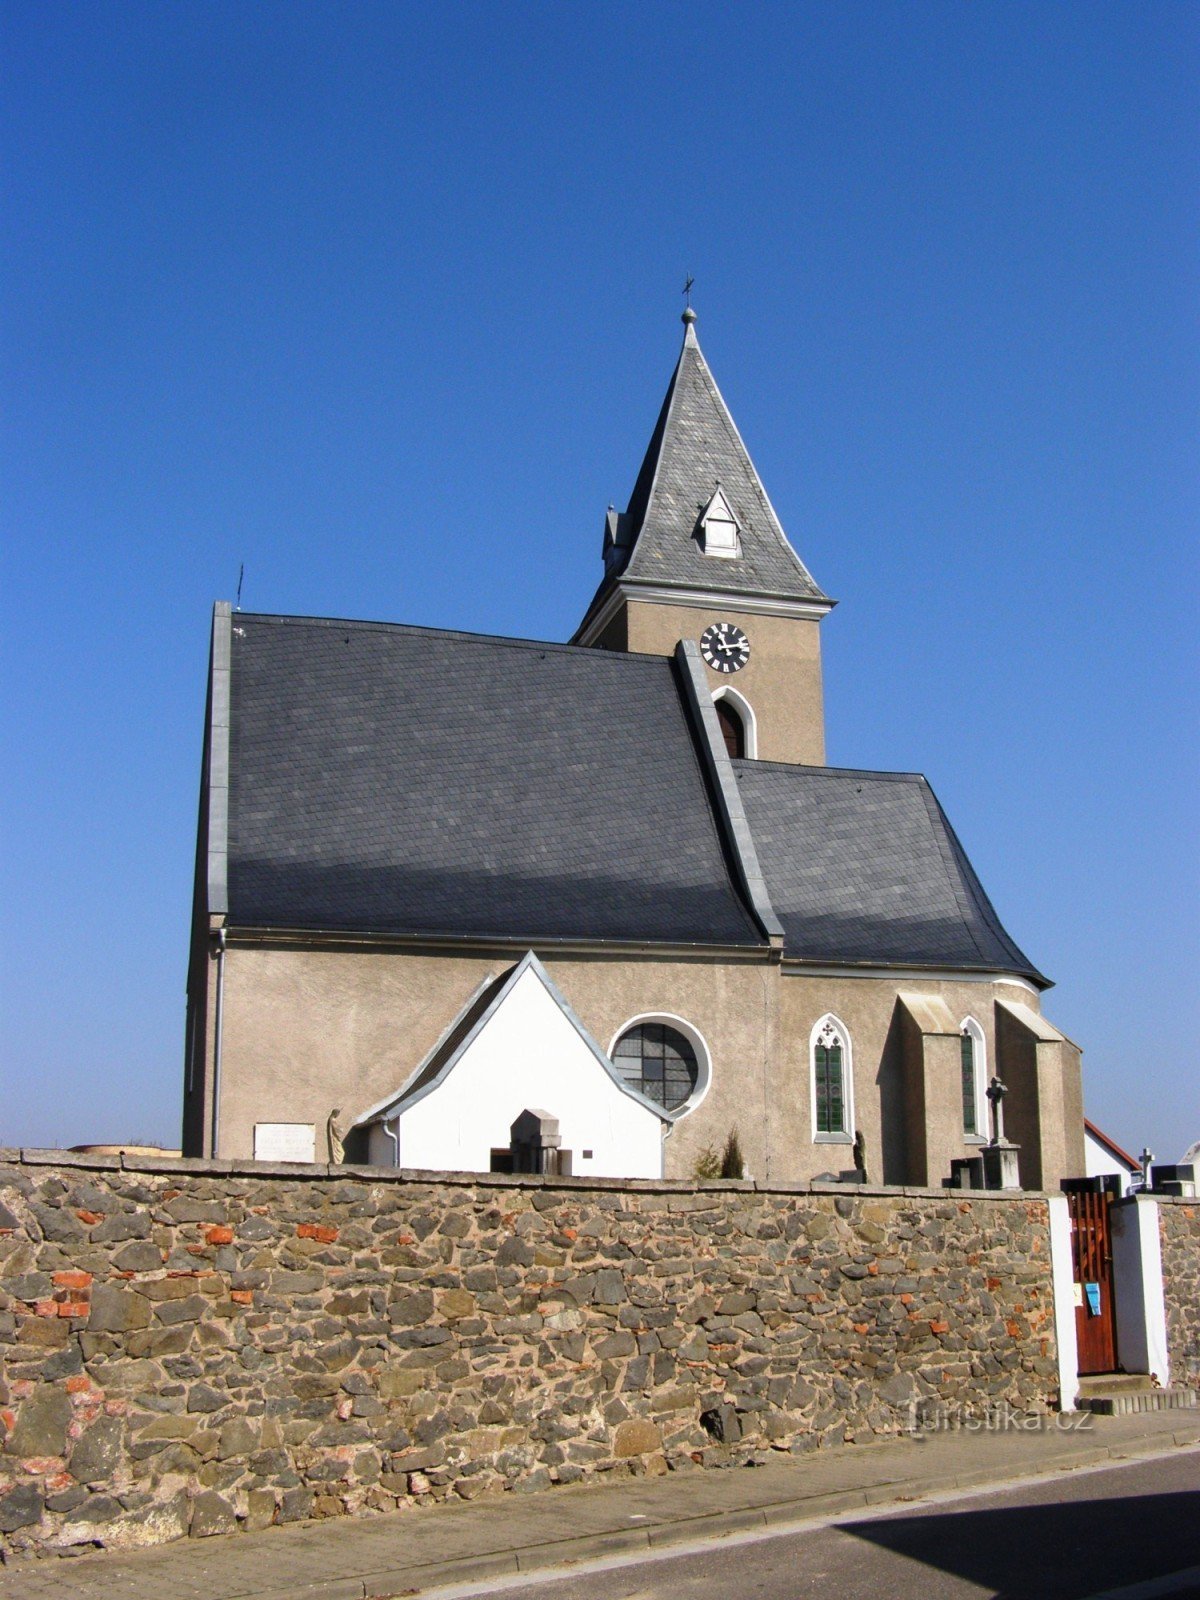 Dríteč - église de St. Pierre et Paul